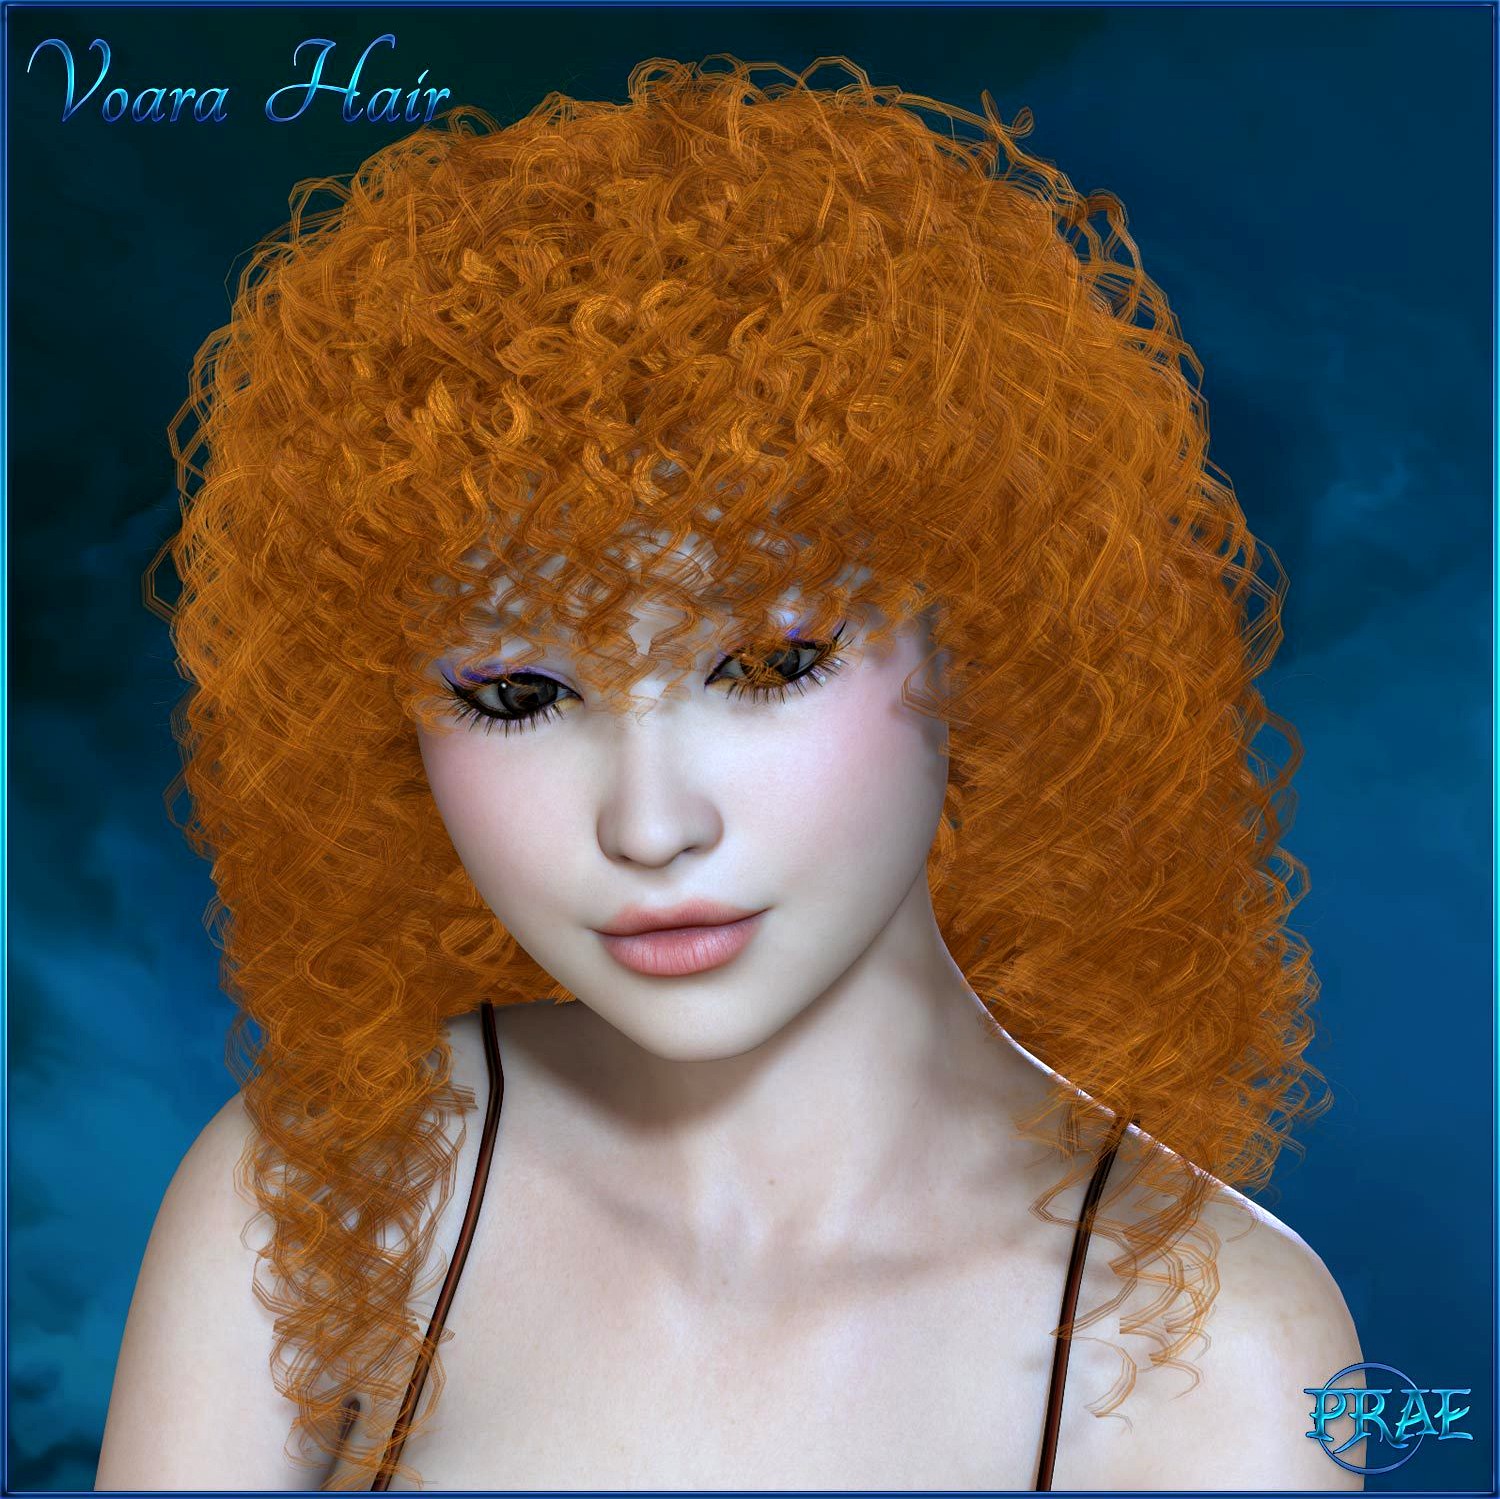 Prae-Voara Hair For V4/M4 La Femme Poser